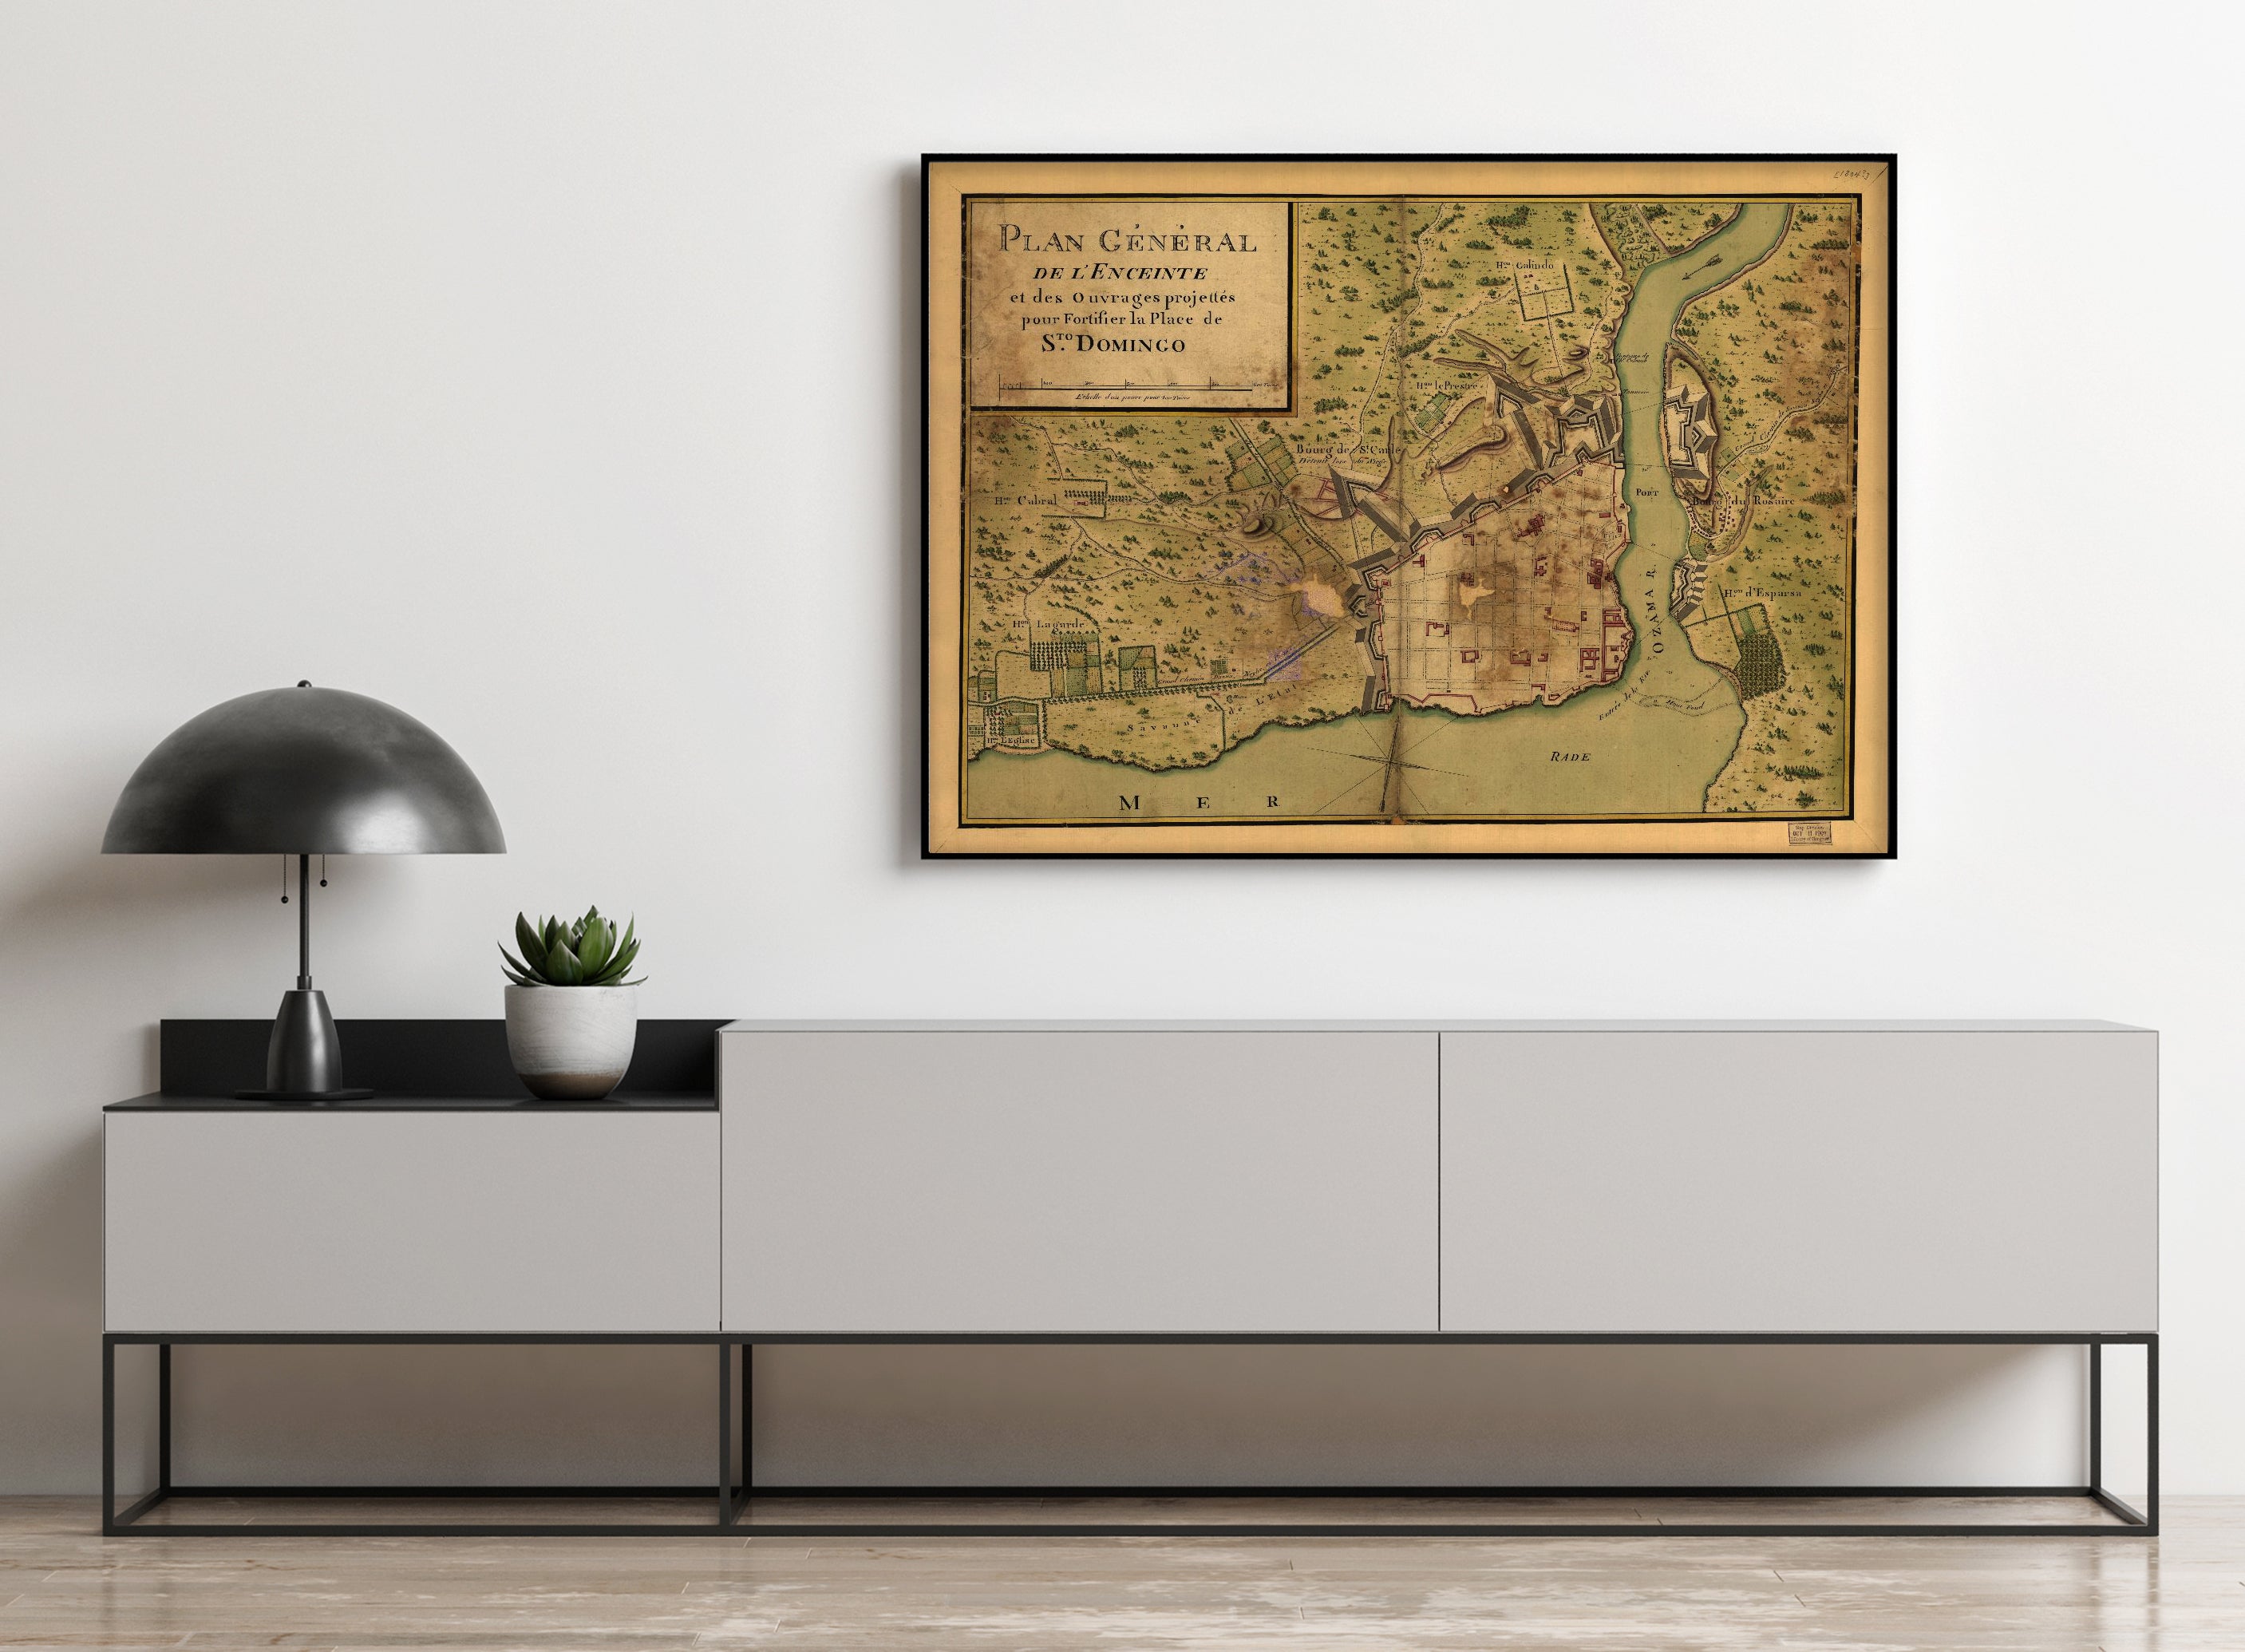 1805 Map | Dominican Republic, Manuscript | Santo Domingo | Santo Domingo Dominican Republic | Plan general de l'enceinte et des ouvrages projettes pour fortifier la place de Sto. Domingo.